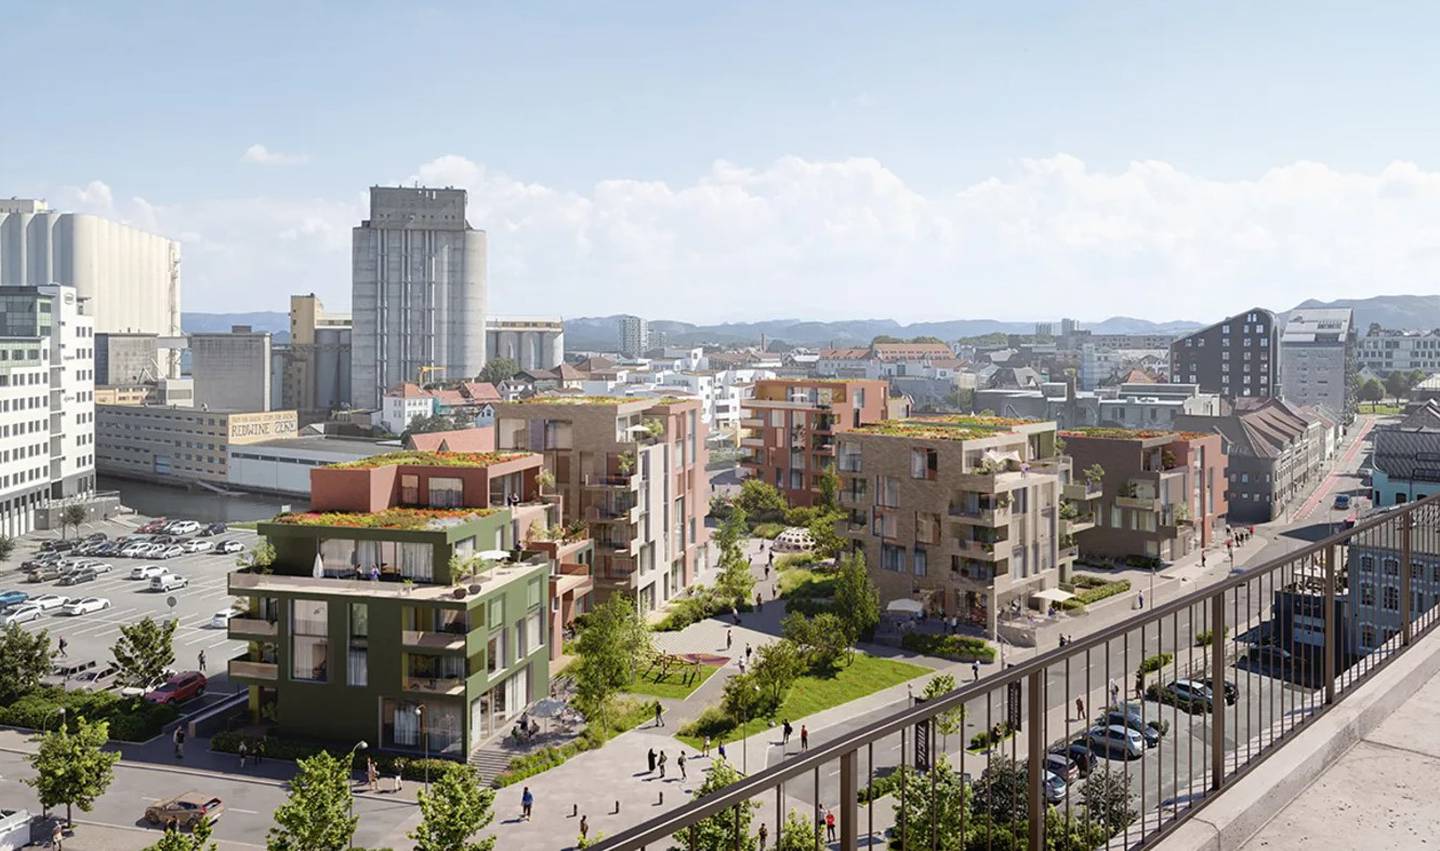 Badedammen Brygge er et av Obos sine boligprosjekter i Stavanger som boligbyggelaget håper å ha ferdig regulert og klart for salgsstart våren 2023.